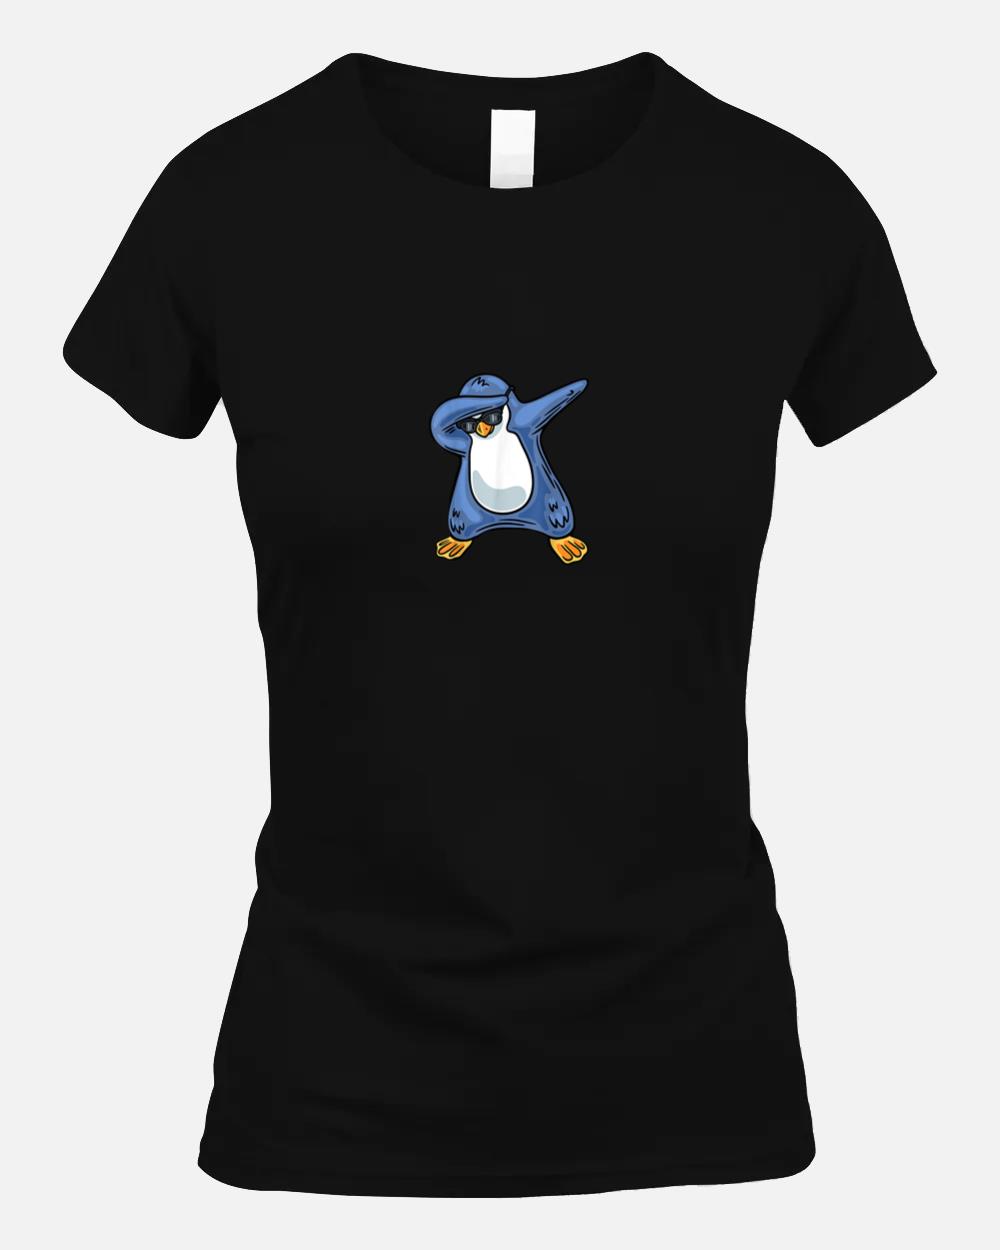 Penguin Tshirt, Funny Penguin Tee, Penguin Lover Unisex T-Shirt